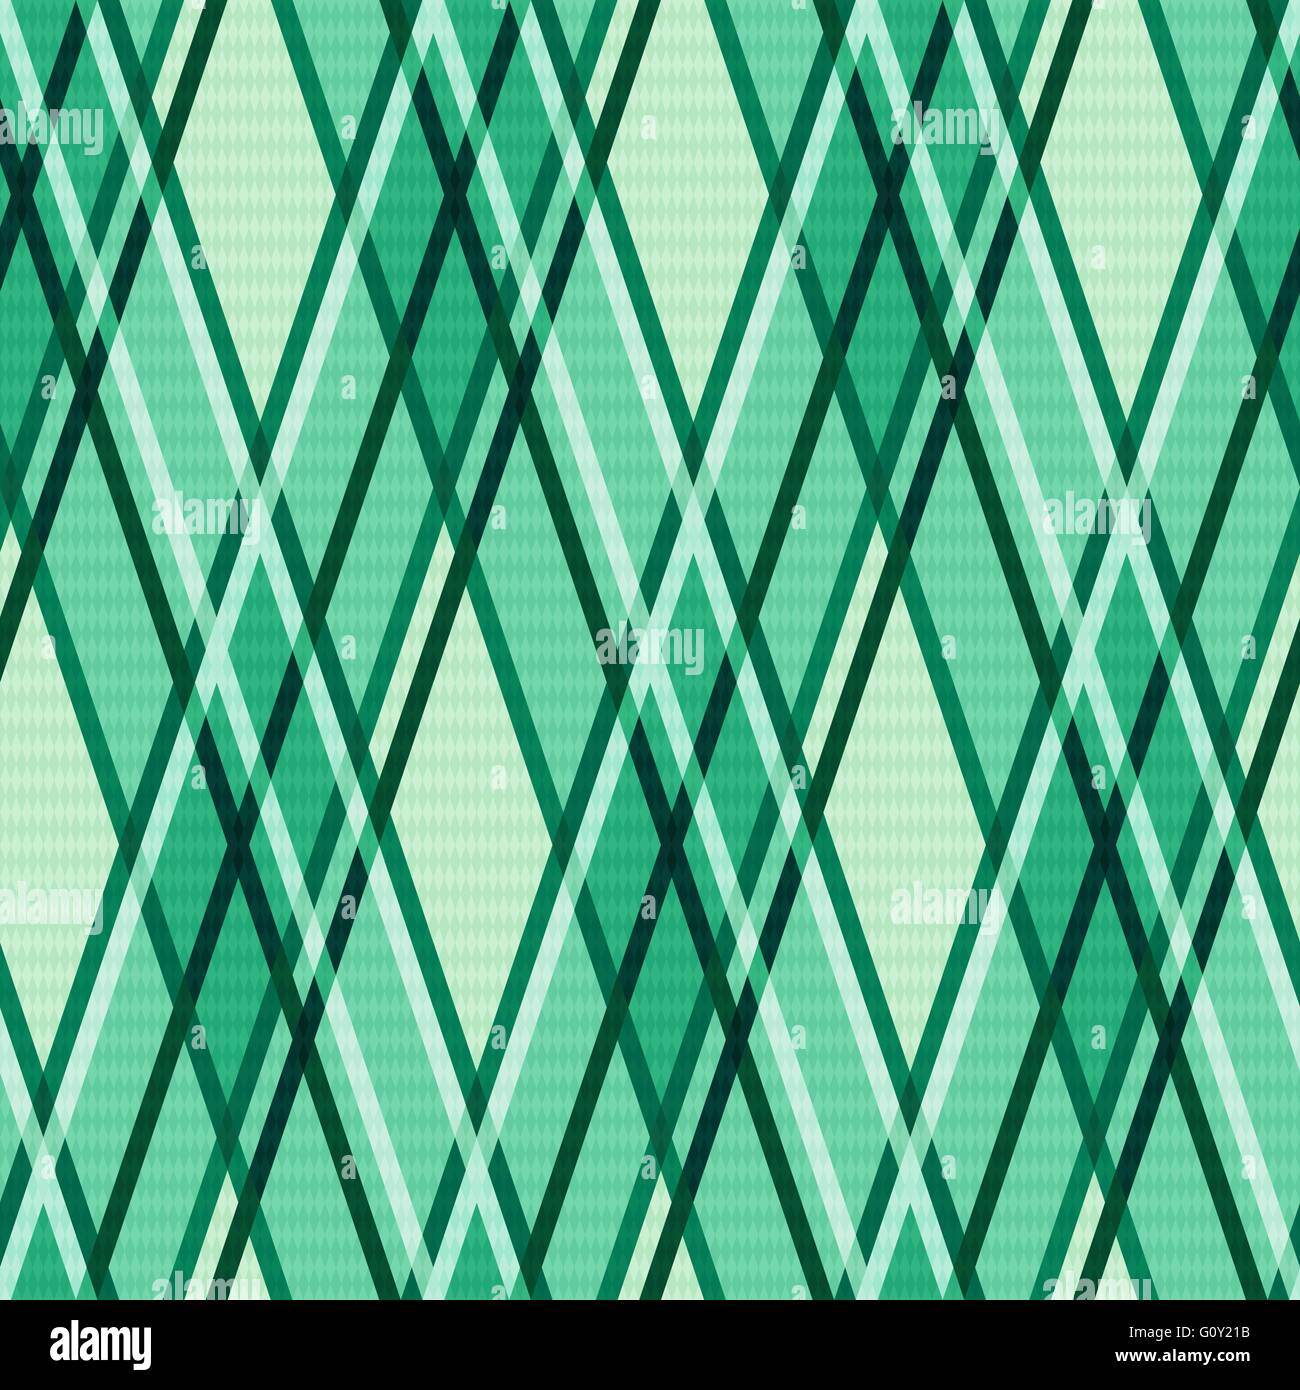 Nahtlose rhombischen Vektor moderne trendige bunte Muster vor allem in grünen Farbtönen Stock Vektor